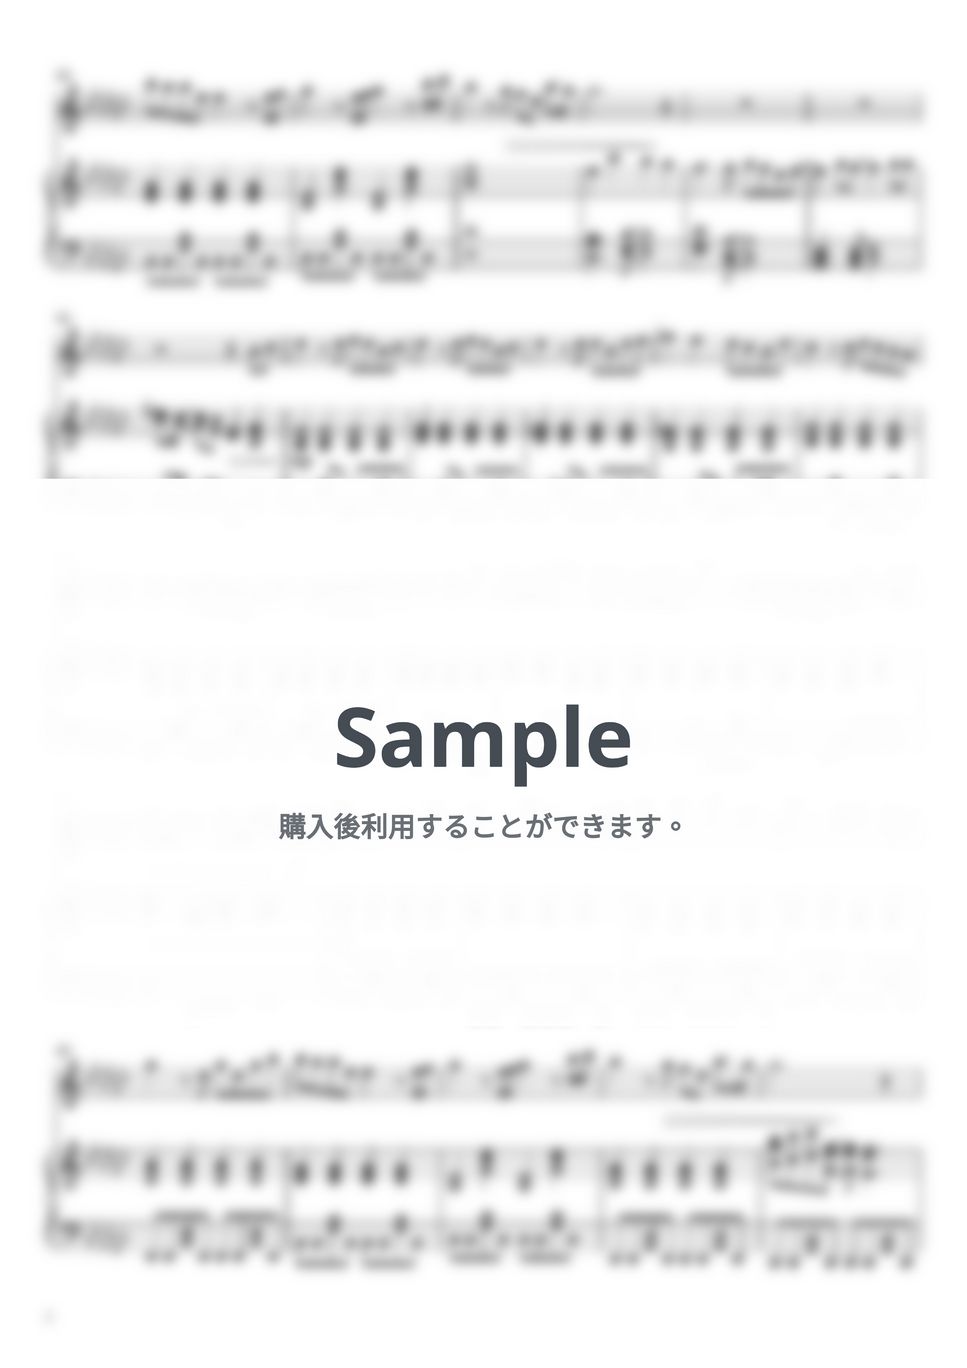 MISIA - アイノカタチ feat.HIDE(GReeeeN)【フルート&ピアノ伴奏】 (フルート&ピアノ伴奏) by PiaFlu